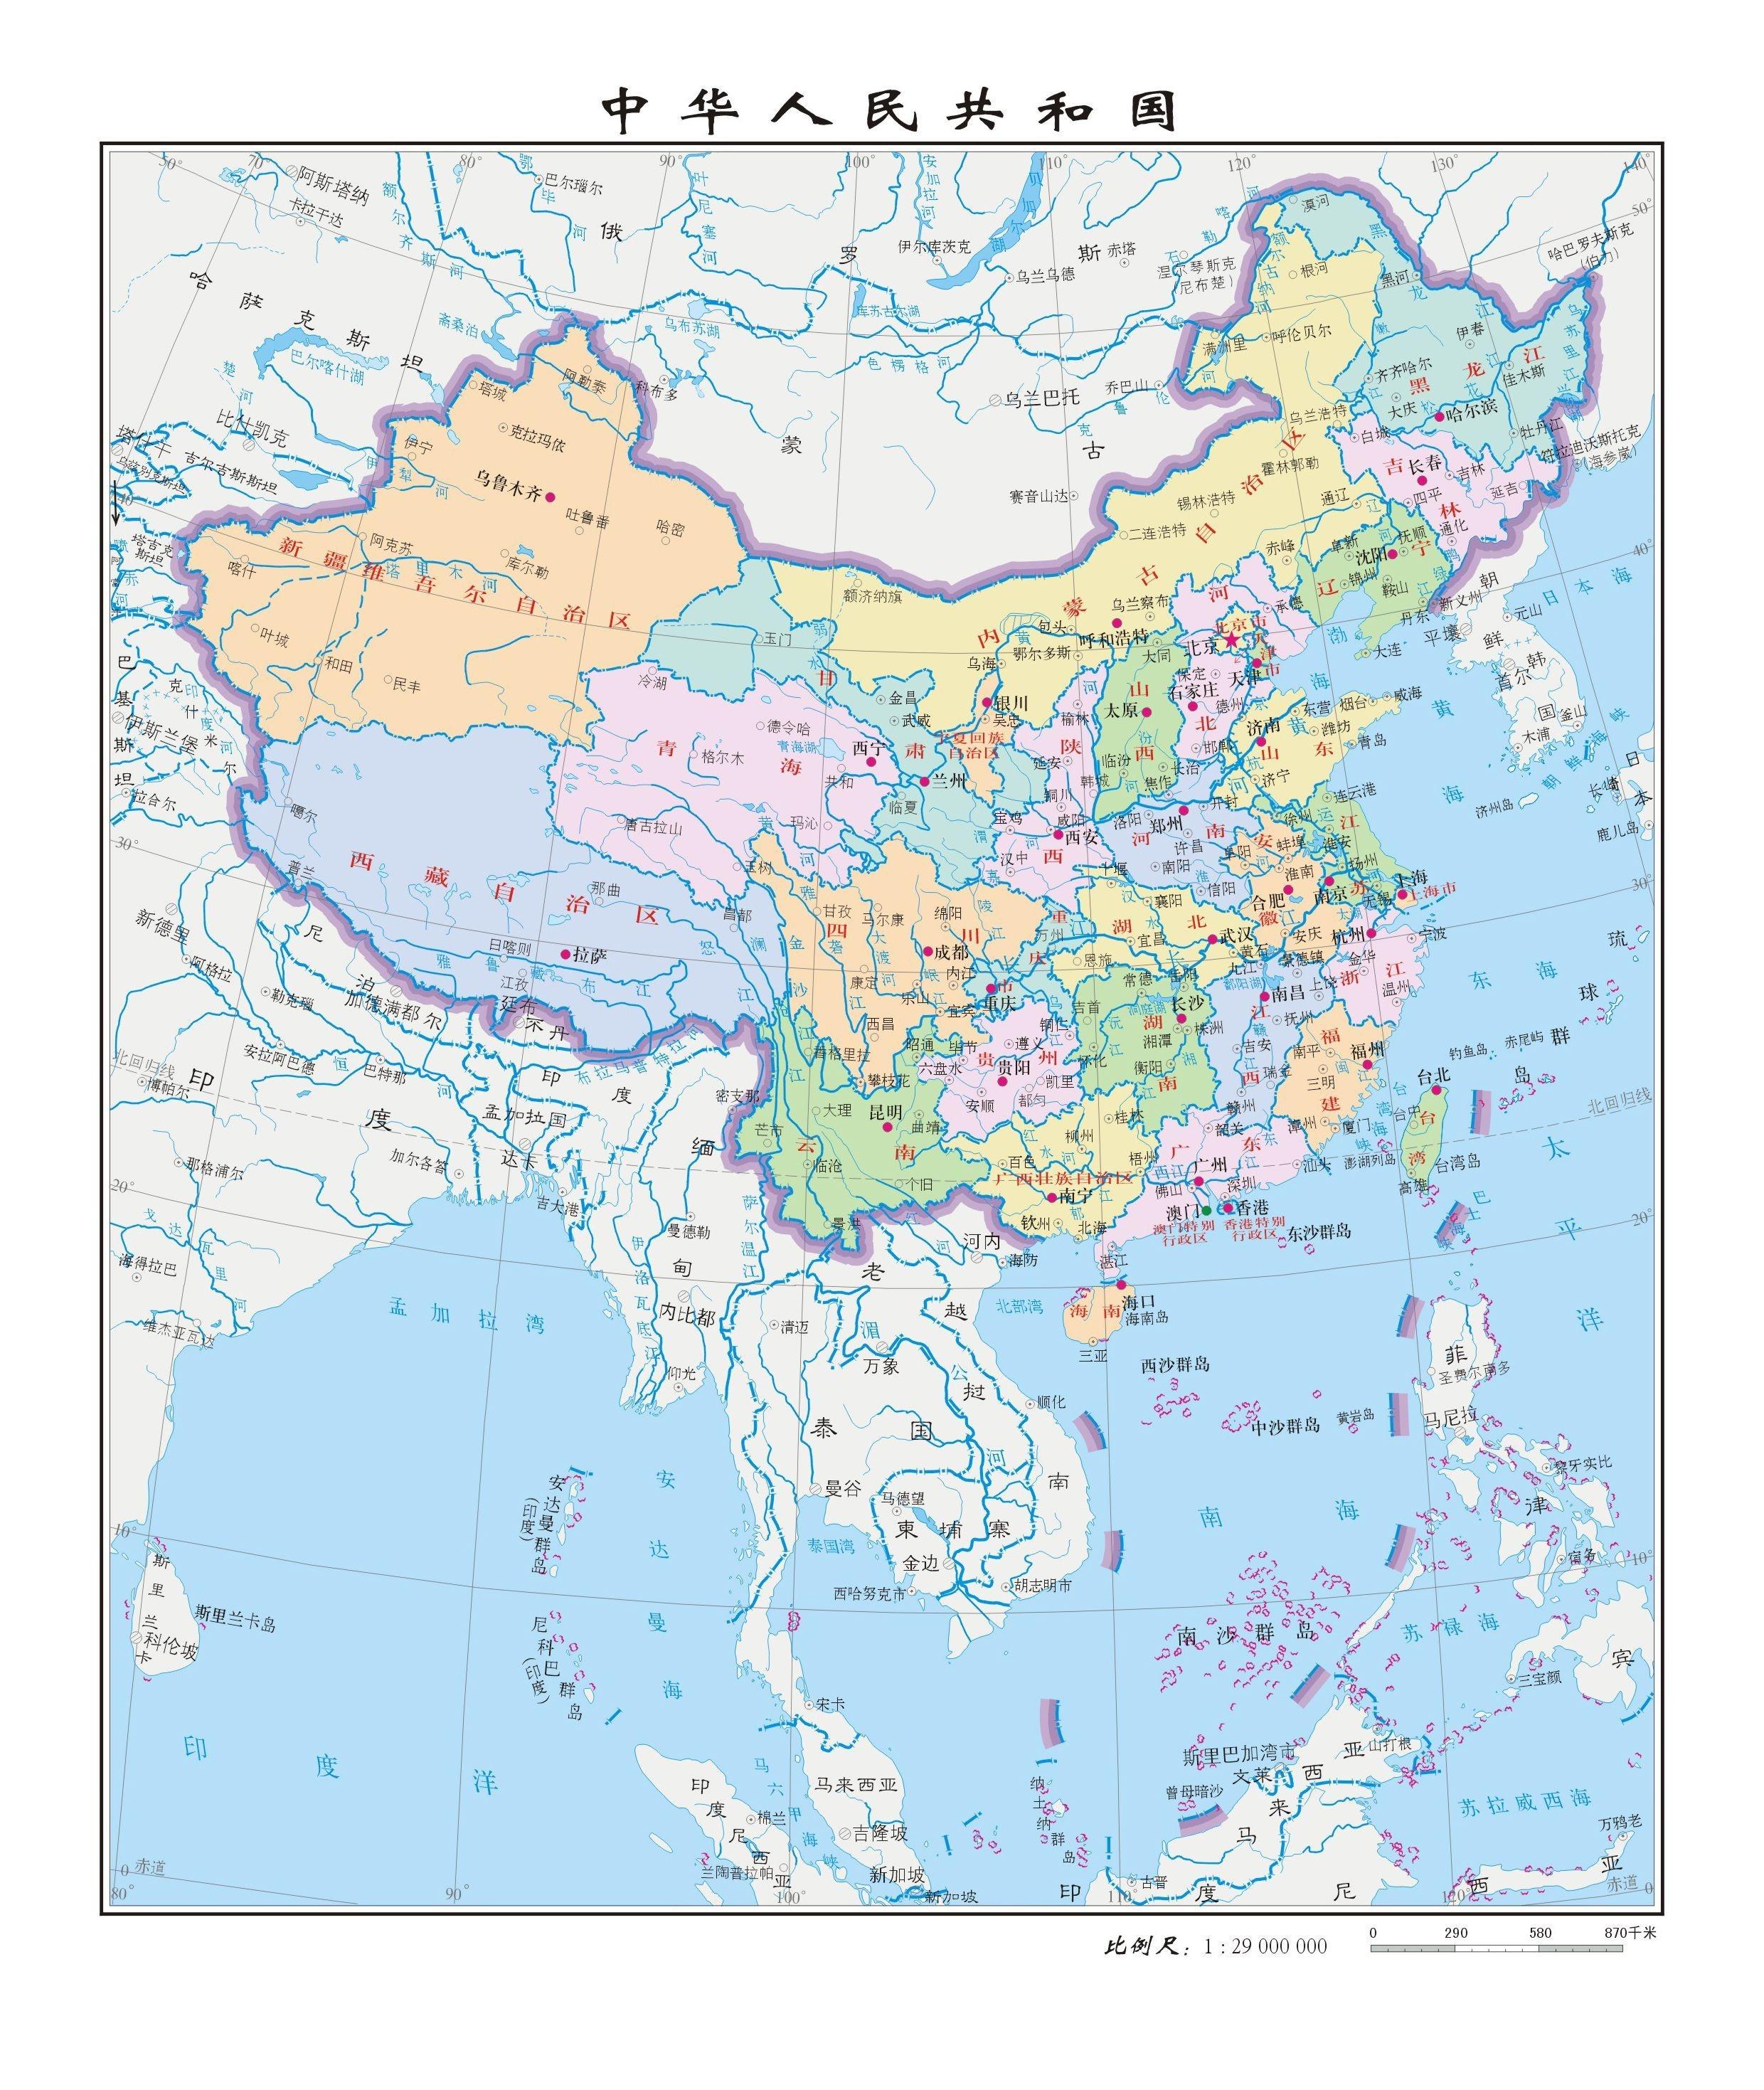 直辖市),县(县级市,自治县)和乡(镇)三级,中国有34个省级行政区,包括